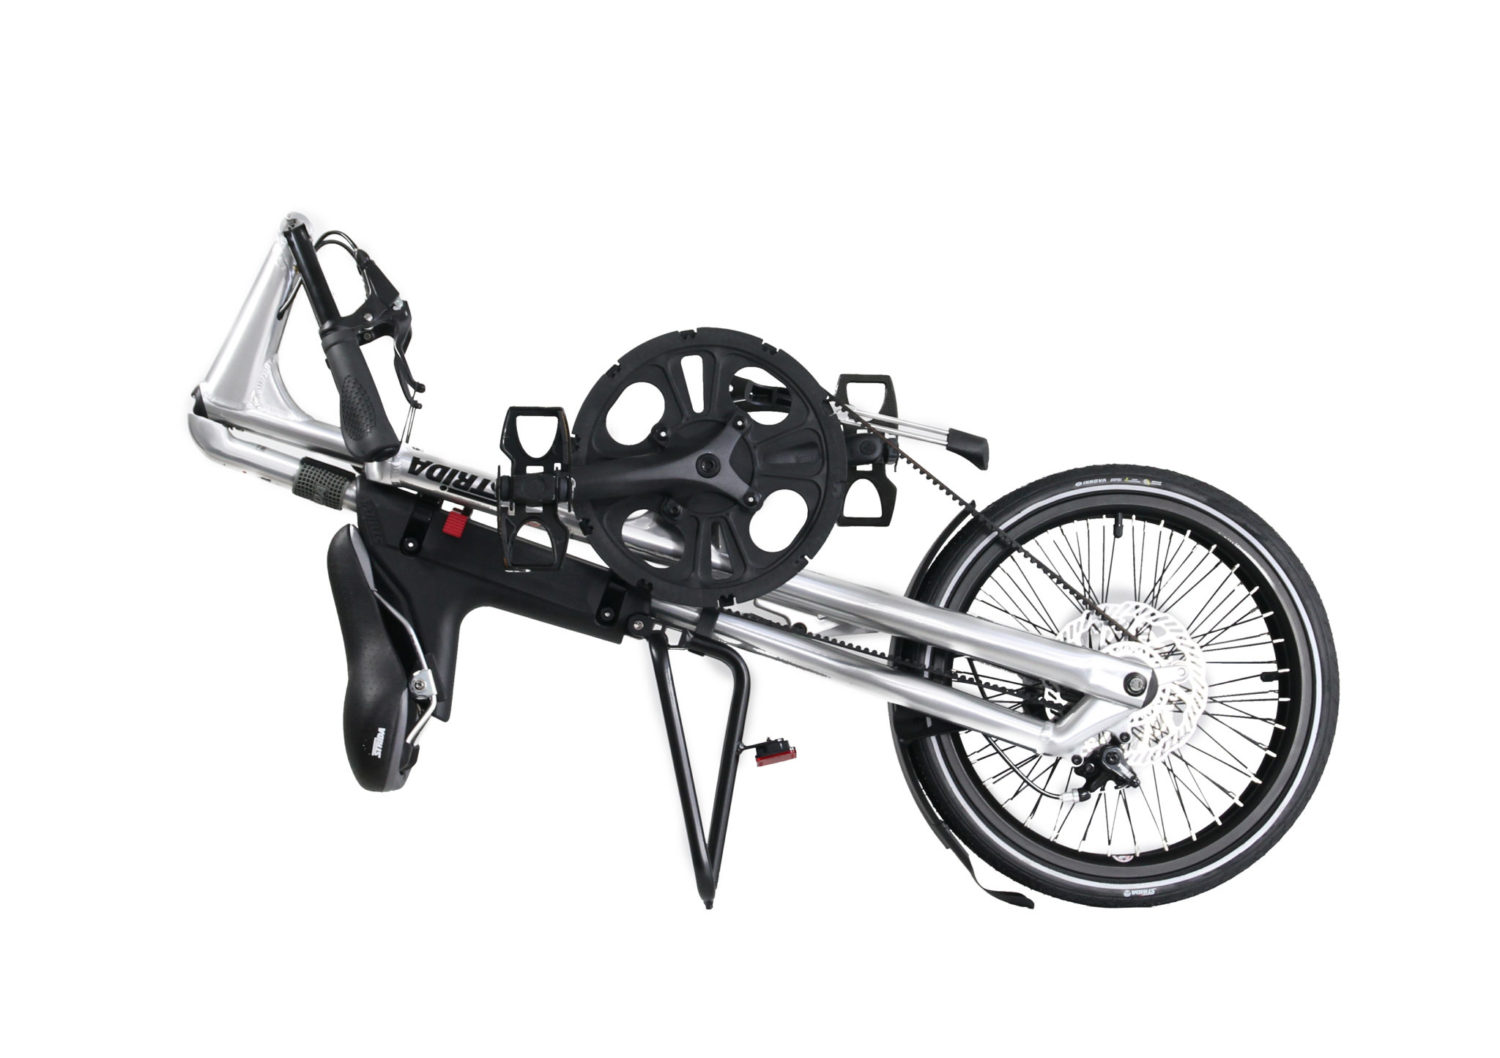 STRIDA SX Silver Brush - Black details - 18 pouces - à vendre - acheter - Acheter des vélos pliables - Acheter des vélos pliants - Acheter un vélo pliable - Acheter un vélo pliant - forme triangulaire - fr - Léger - Magasin - Magasin de vélo pliant - nouveau - strida - sx - triangulaire - vélo - vélo compact - Vélo design - vélo pliable - vélo pliant - Vélo pliant design - vélo pliant design strida - Vélo pliant triangulaire - vélo pliant unique - Vélos pliable - Vélos pliants - Vitesse unique